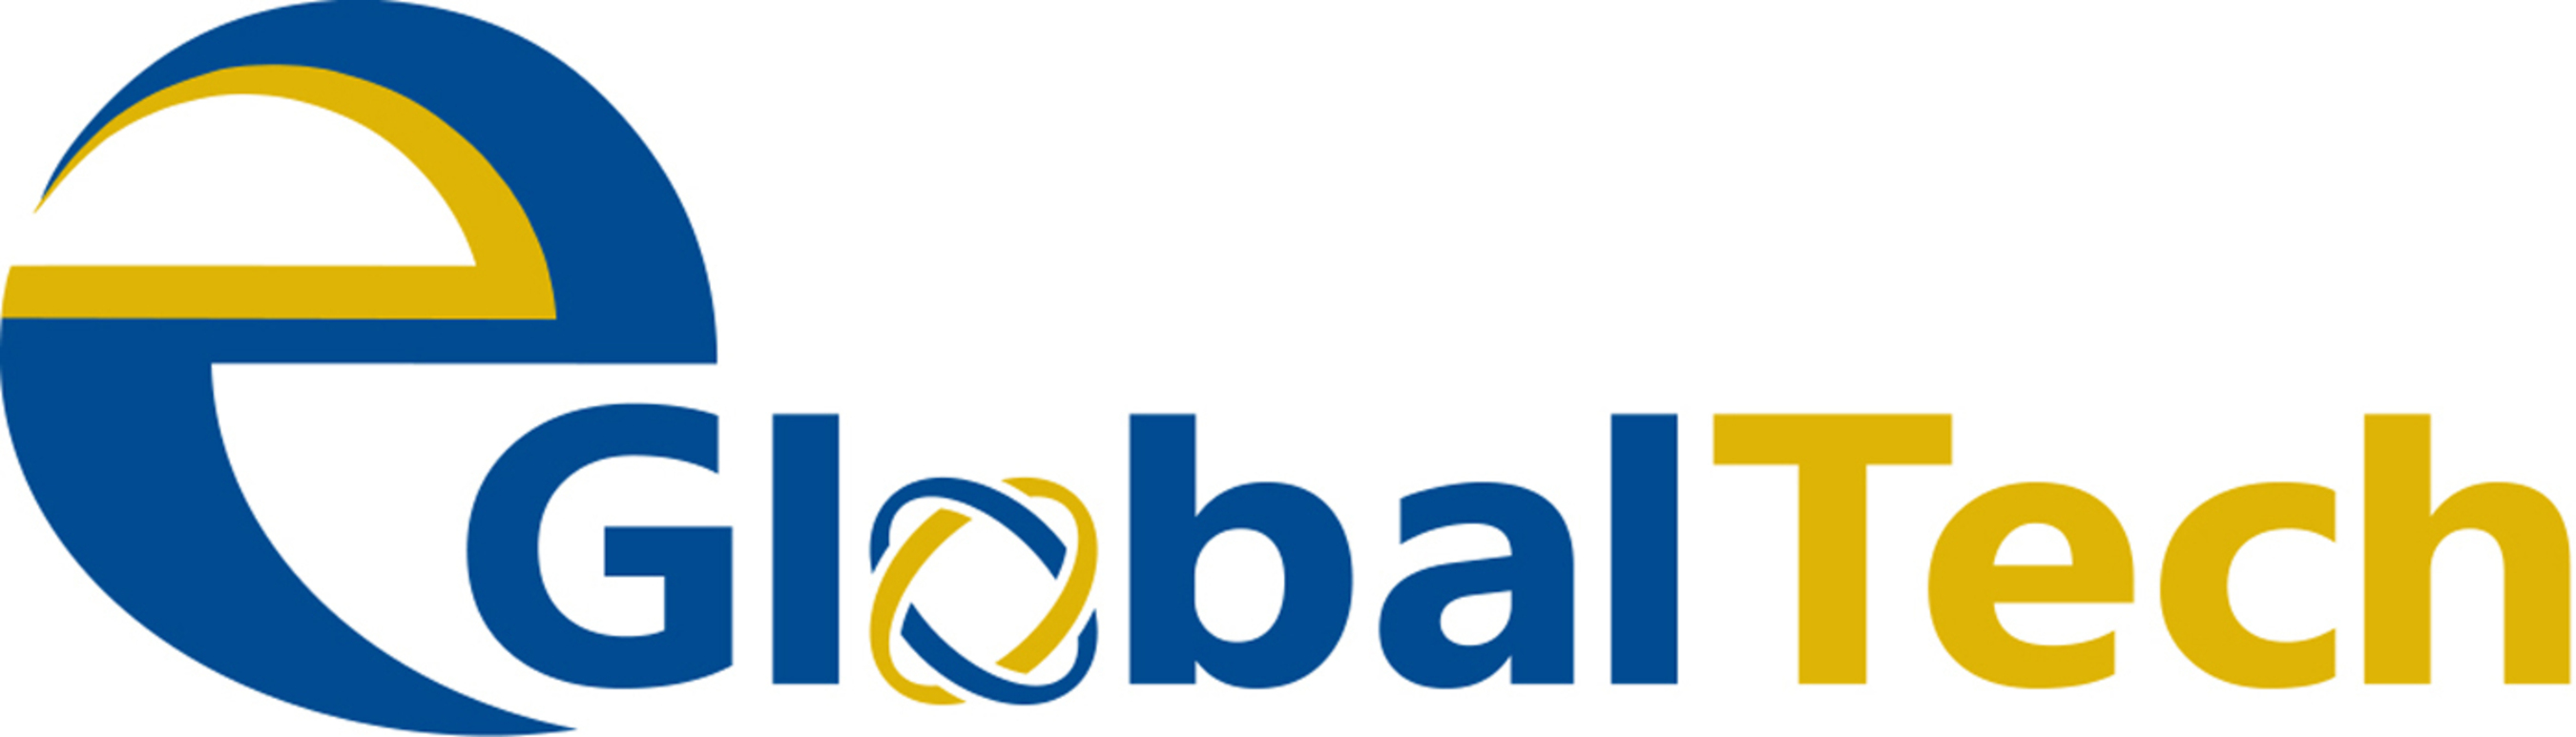 EGLOBALTECH Logo.